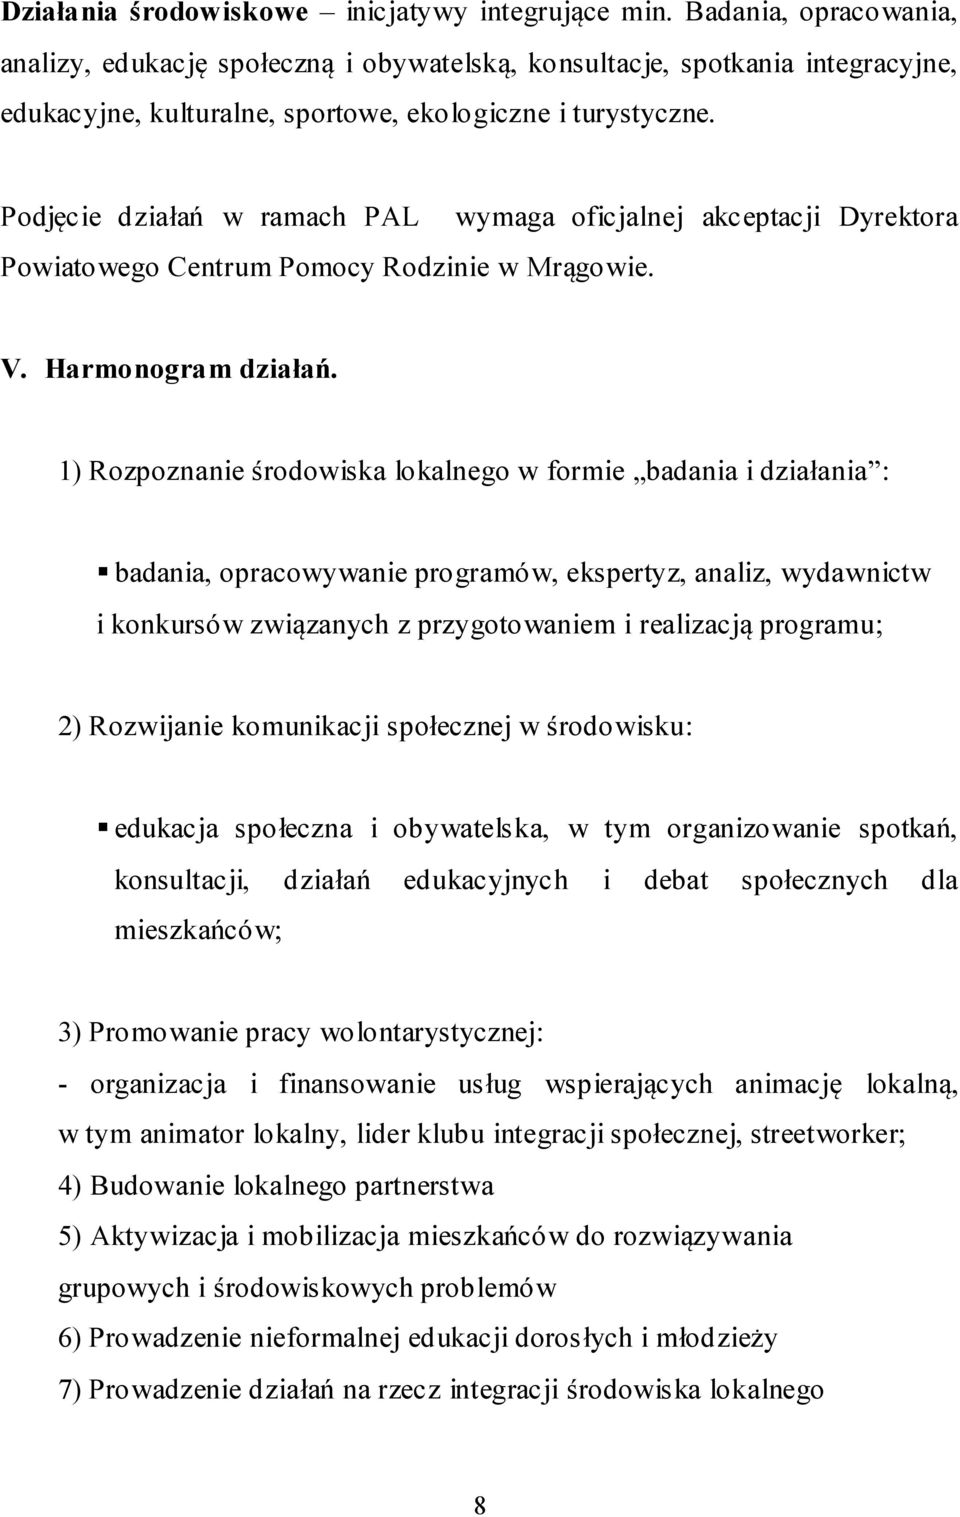 Podjęcie działań w ramach PAL Powiatowego Centrum Pomocy Rodzinie w Mrągowie. wymaga oficjalnej akceptacji Dyrektora V. Harmonogram działań.